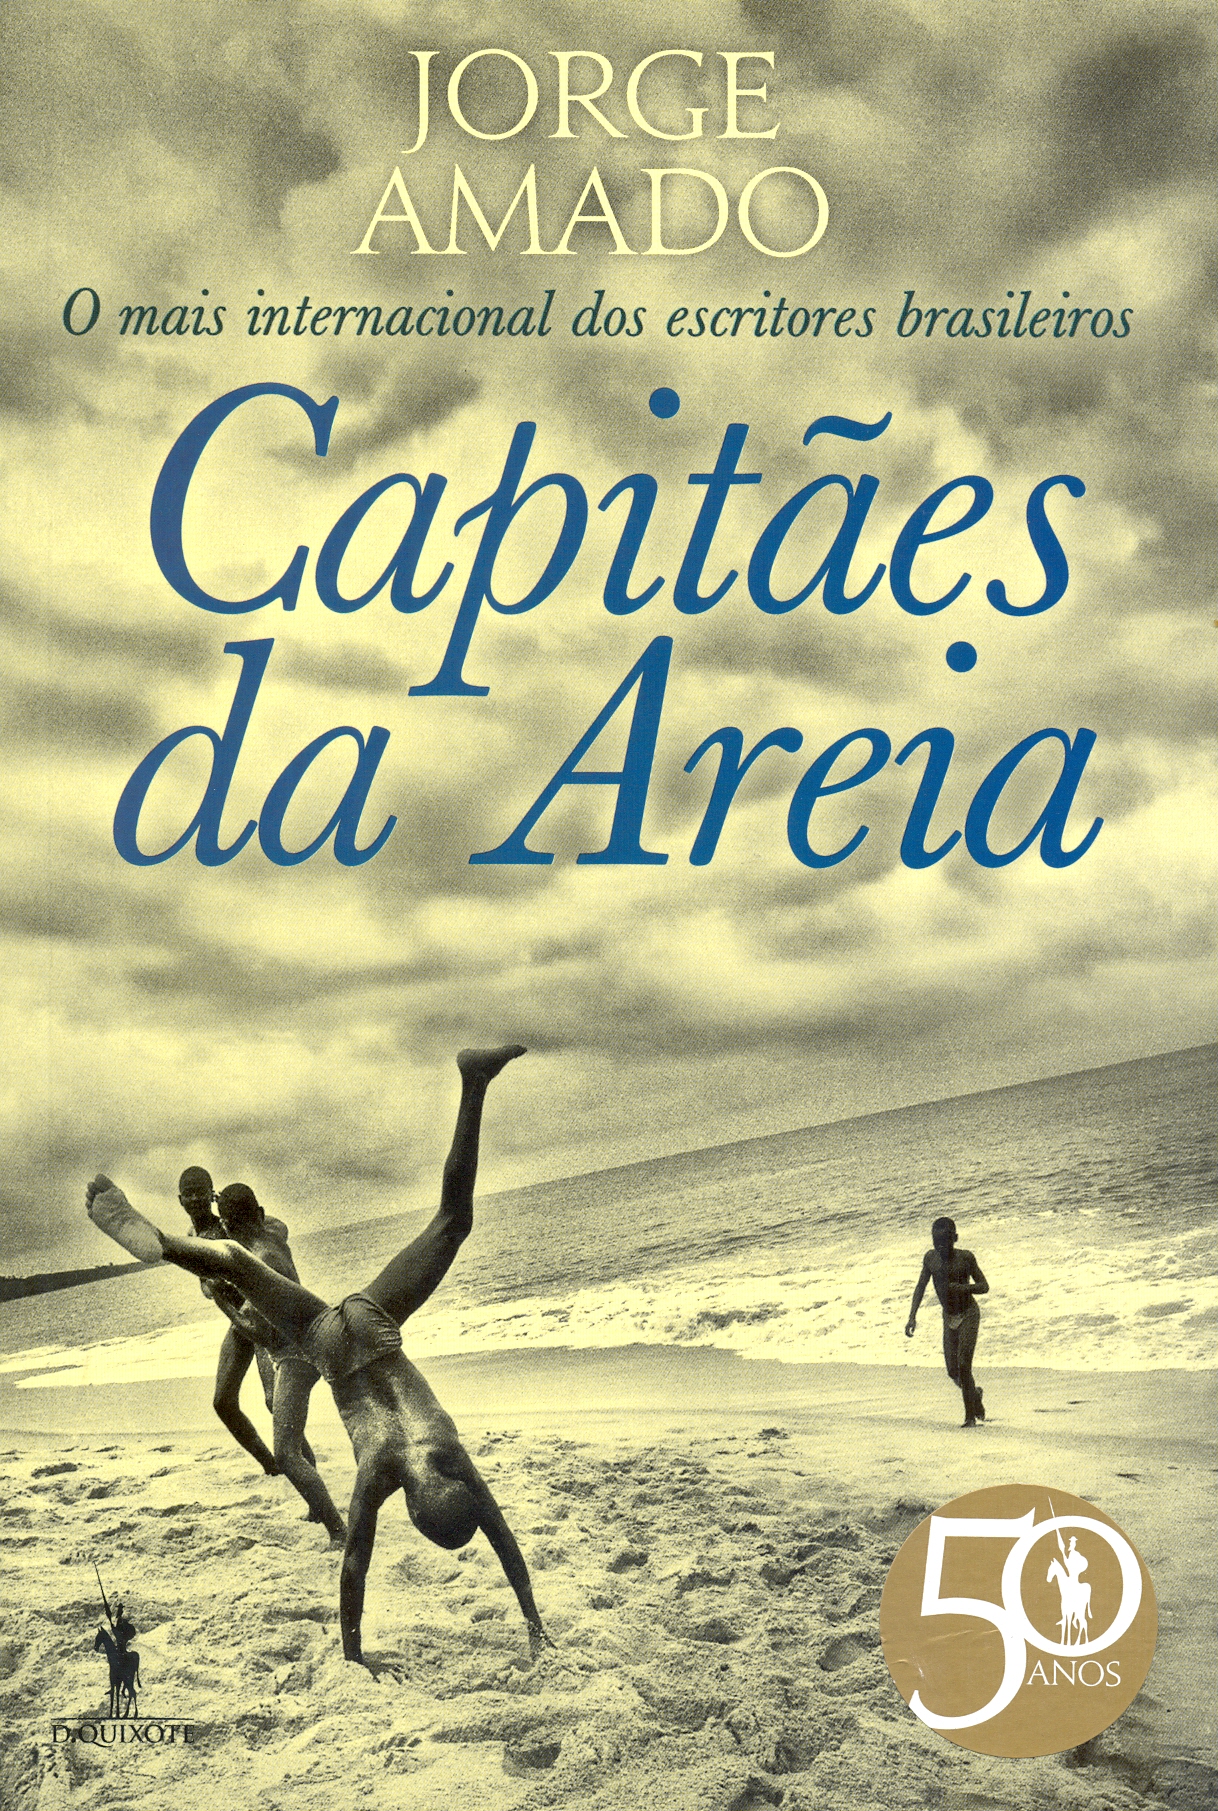 Jorge Amado – Capitães da Areia